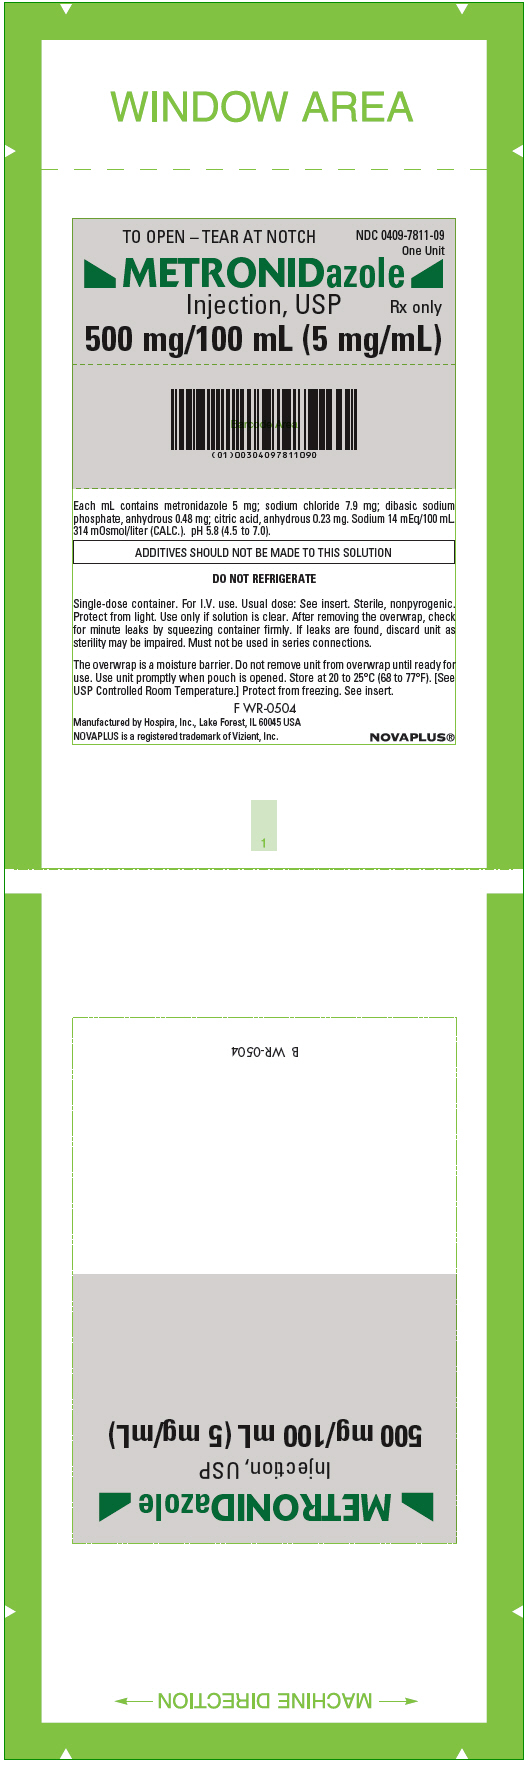 PRINCIPAL DISPLAY PANEL - 5 mg/mL Bag Overwrap Label